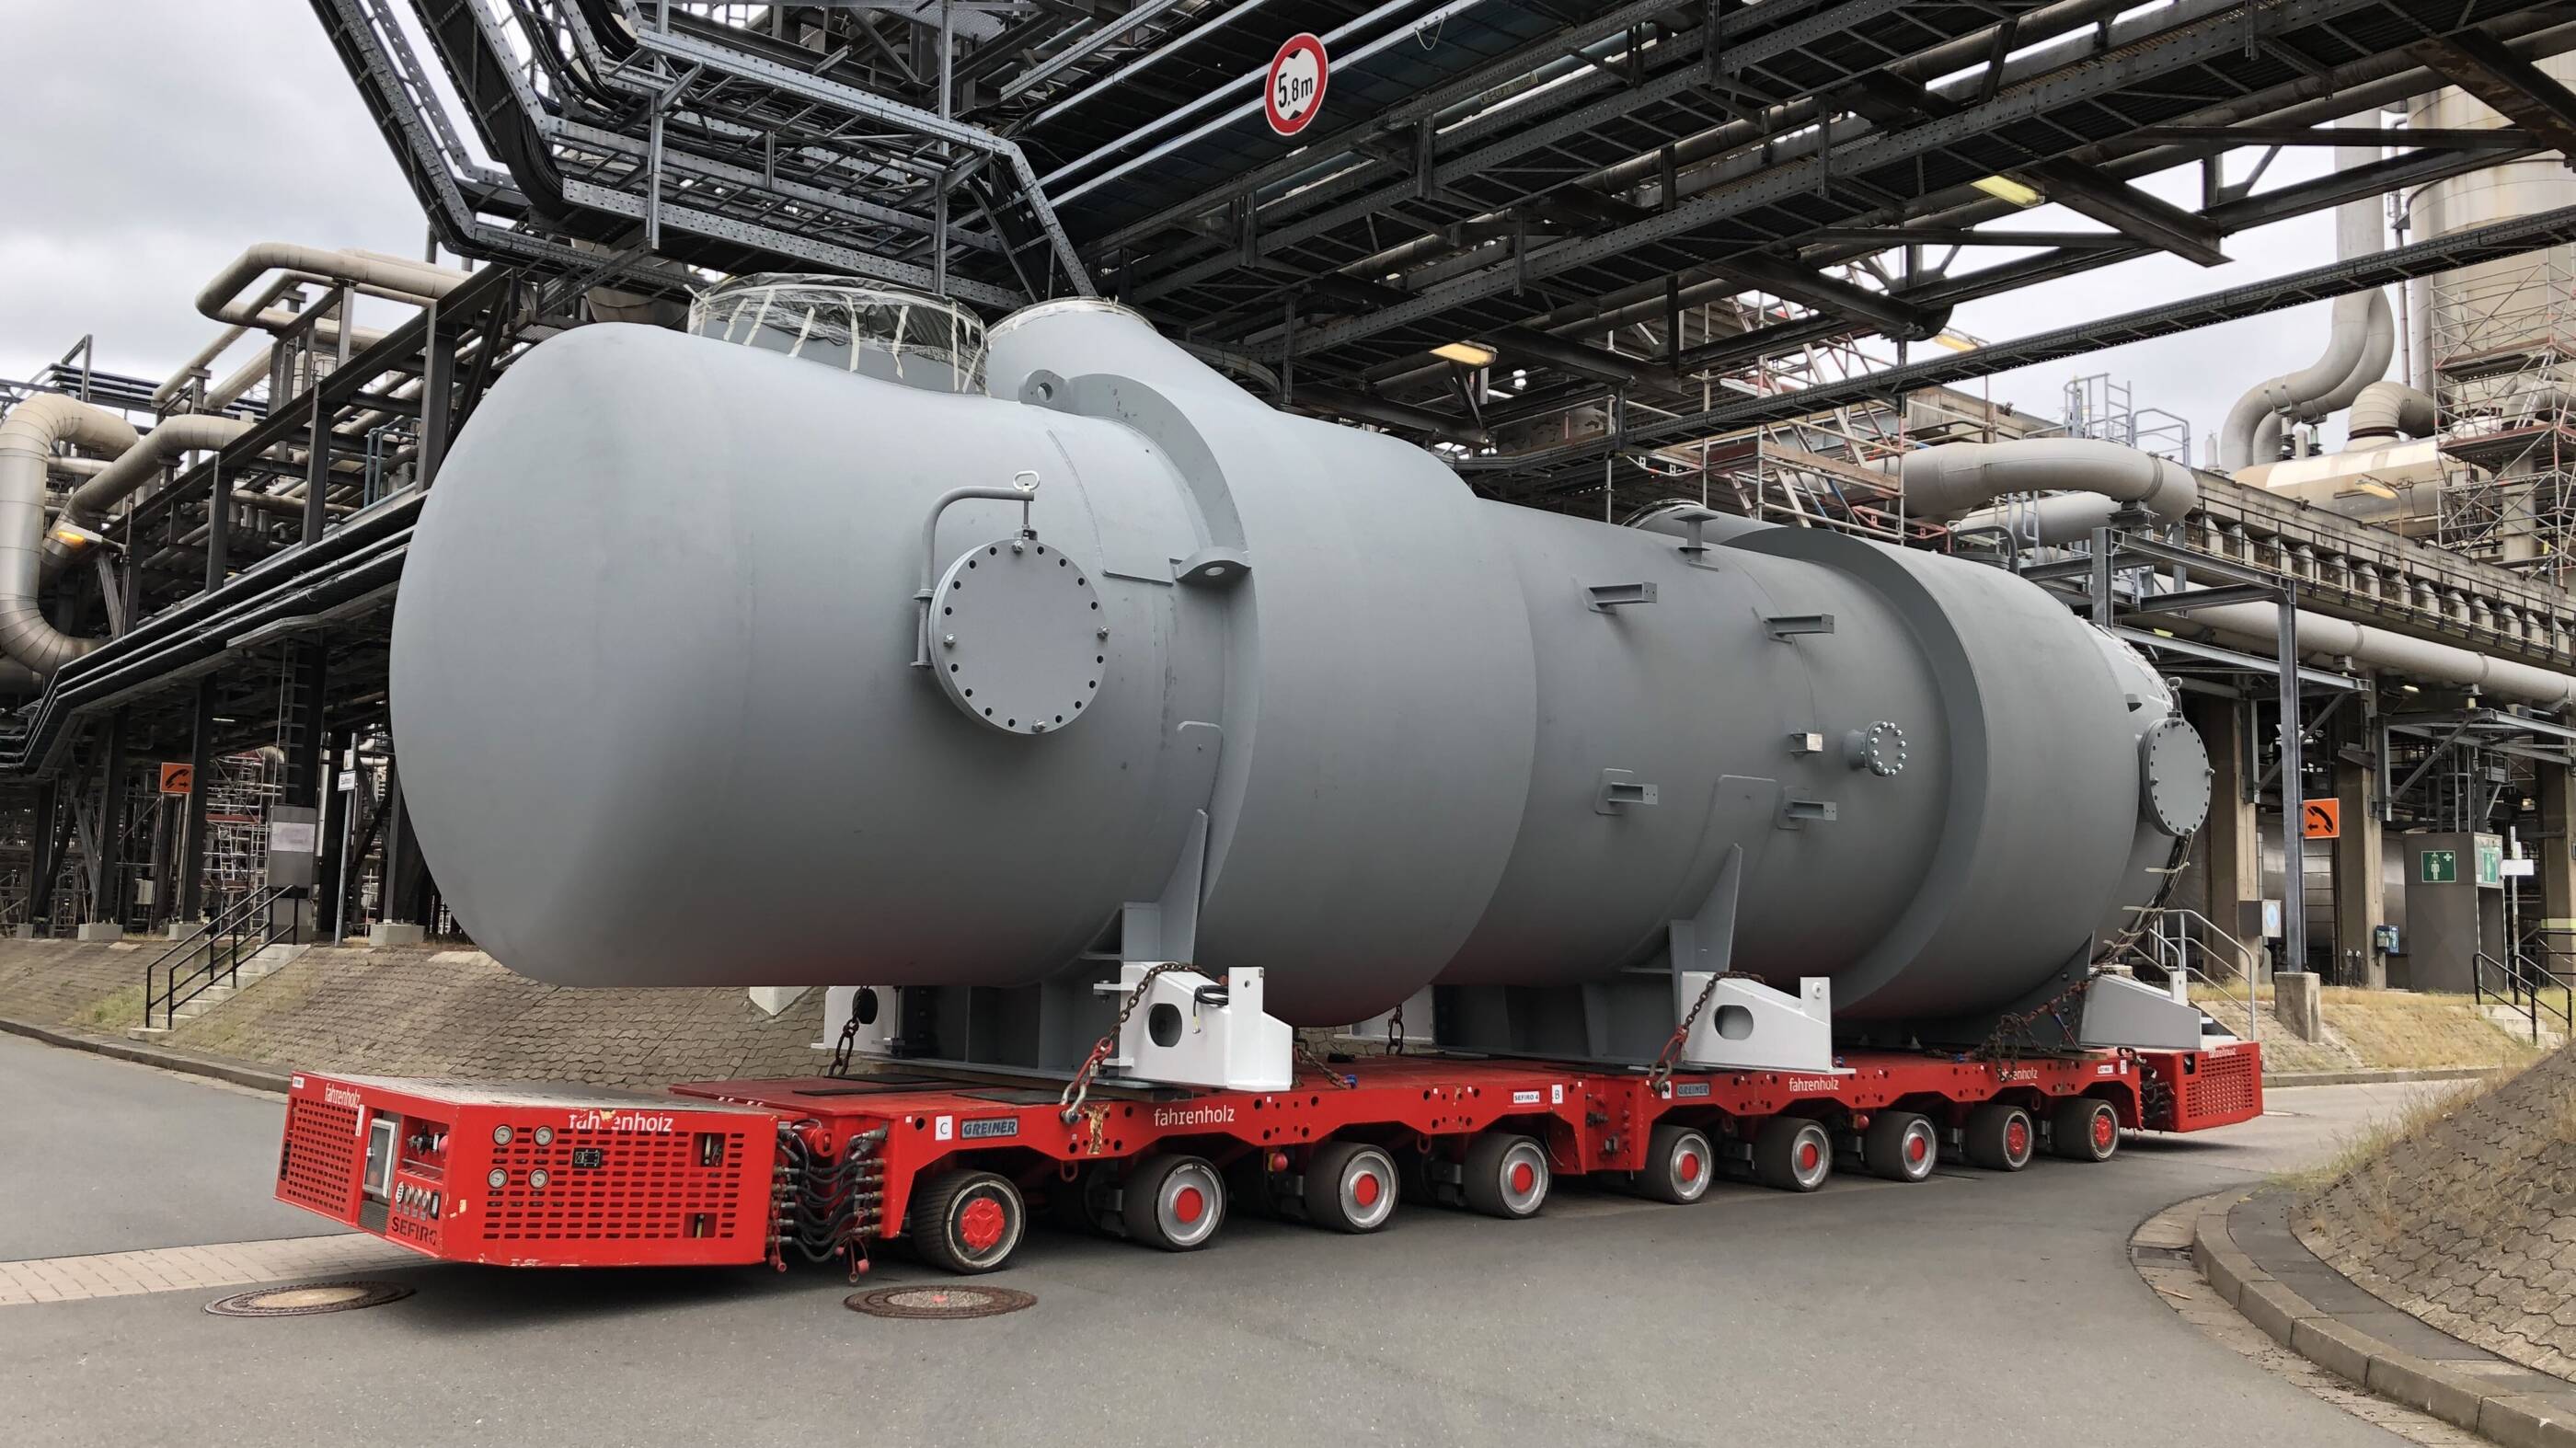 Image Bild: Der neue Wärmetauscher für die Erdgasaufbereitungsanlage